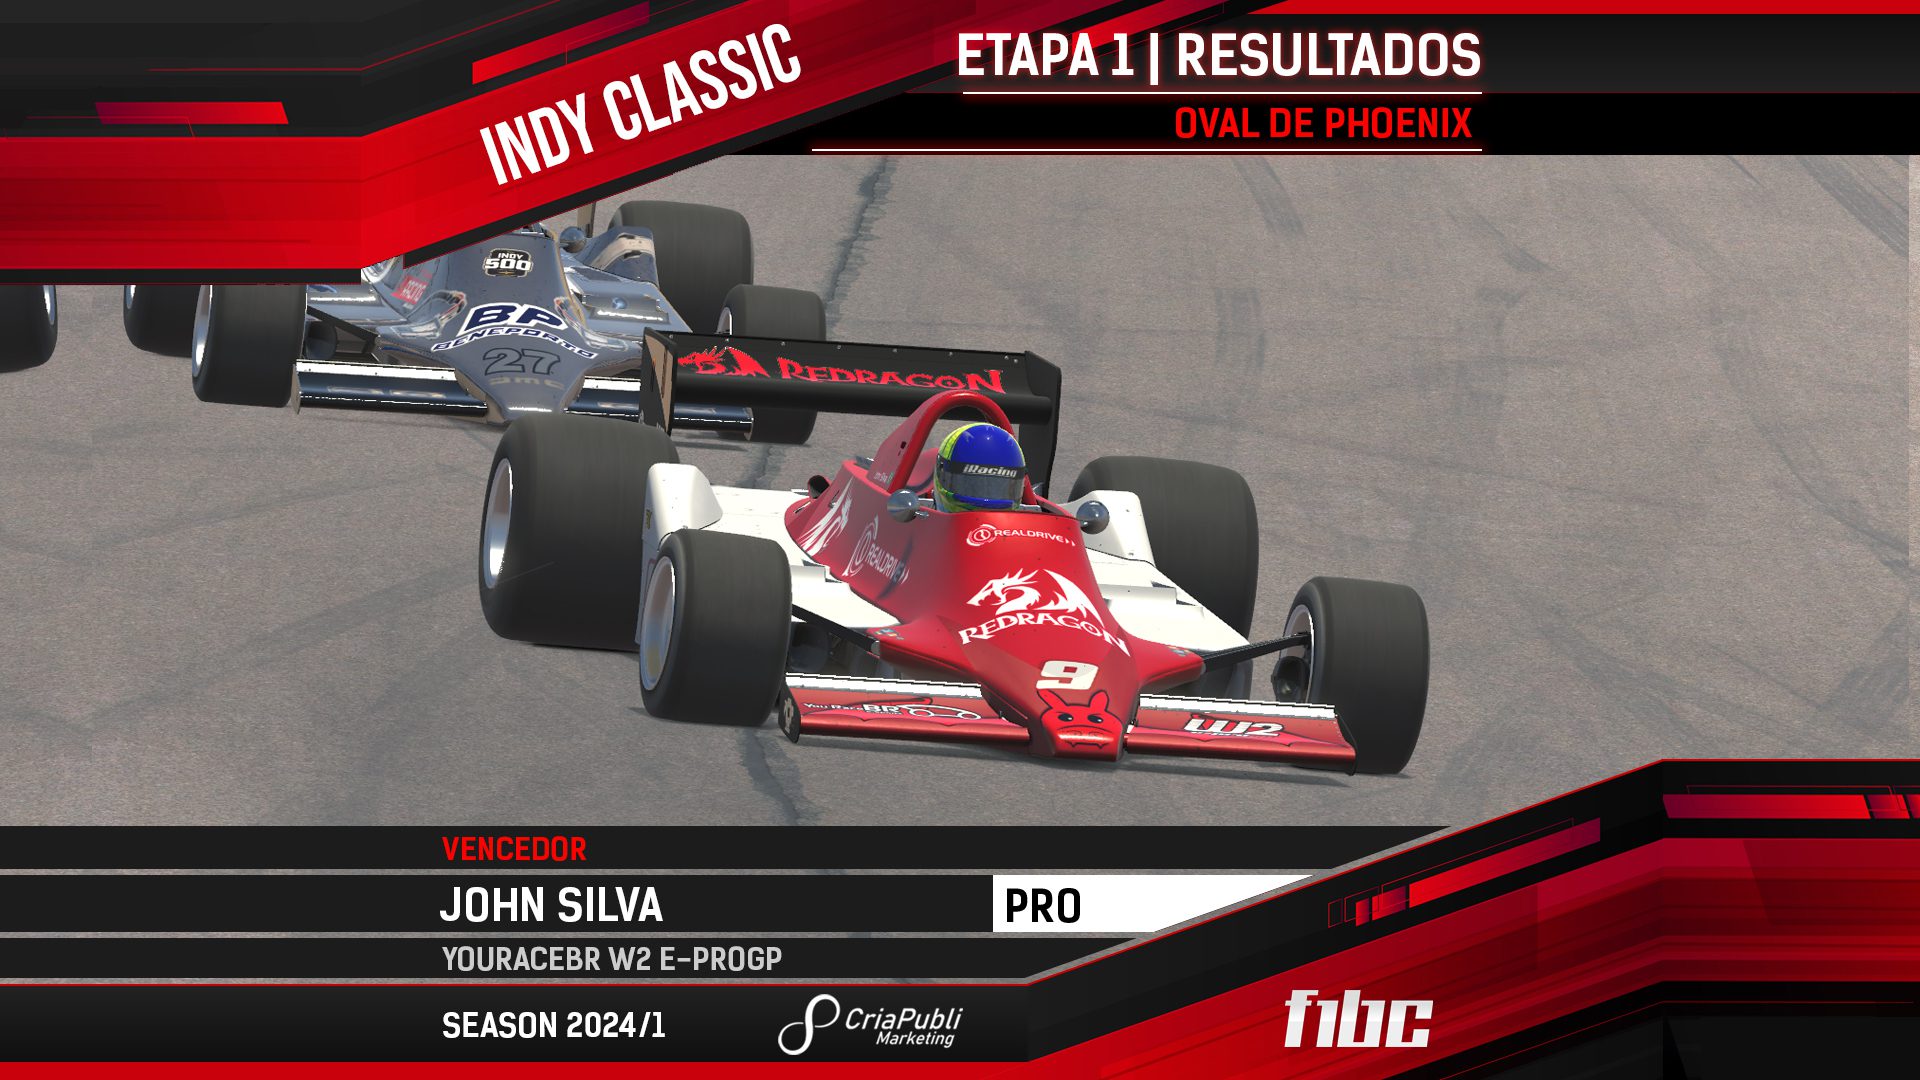 F1BC Indy Classic: John Silva vence na primeira etapa em Phoenix